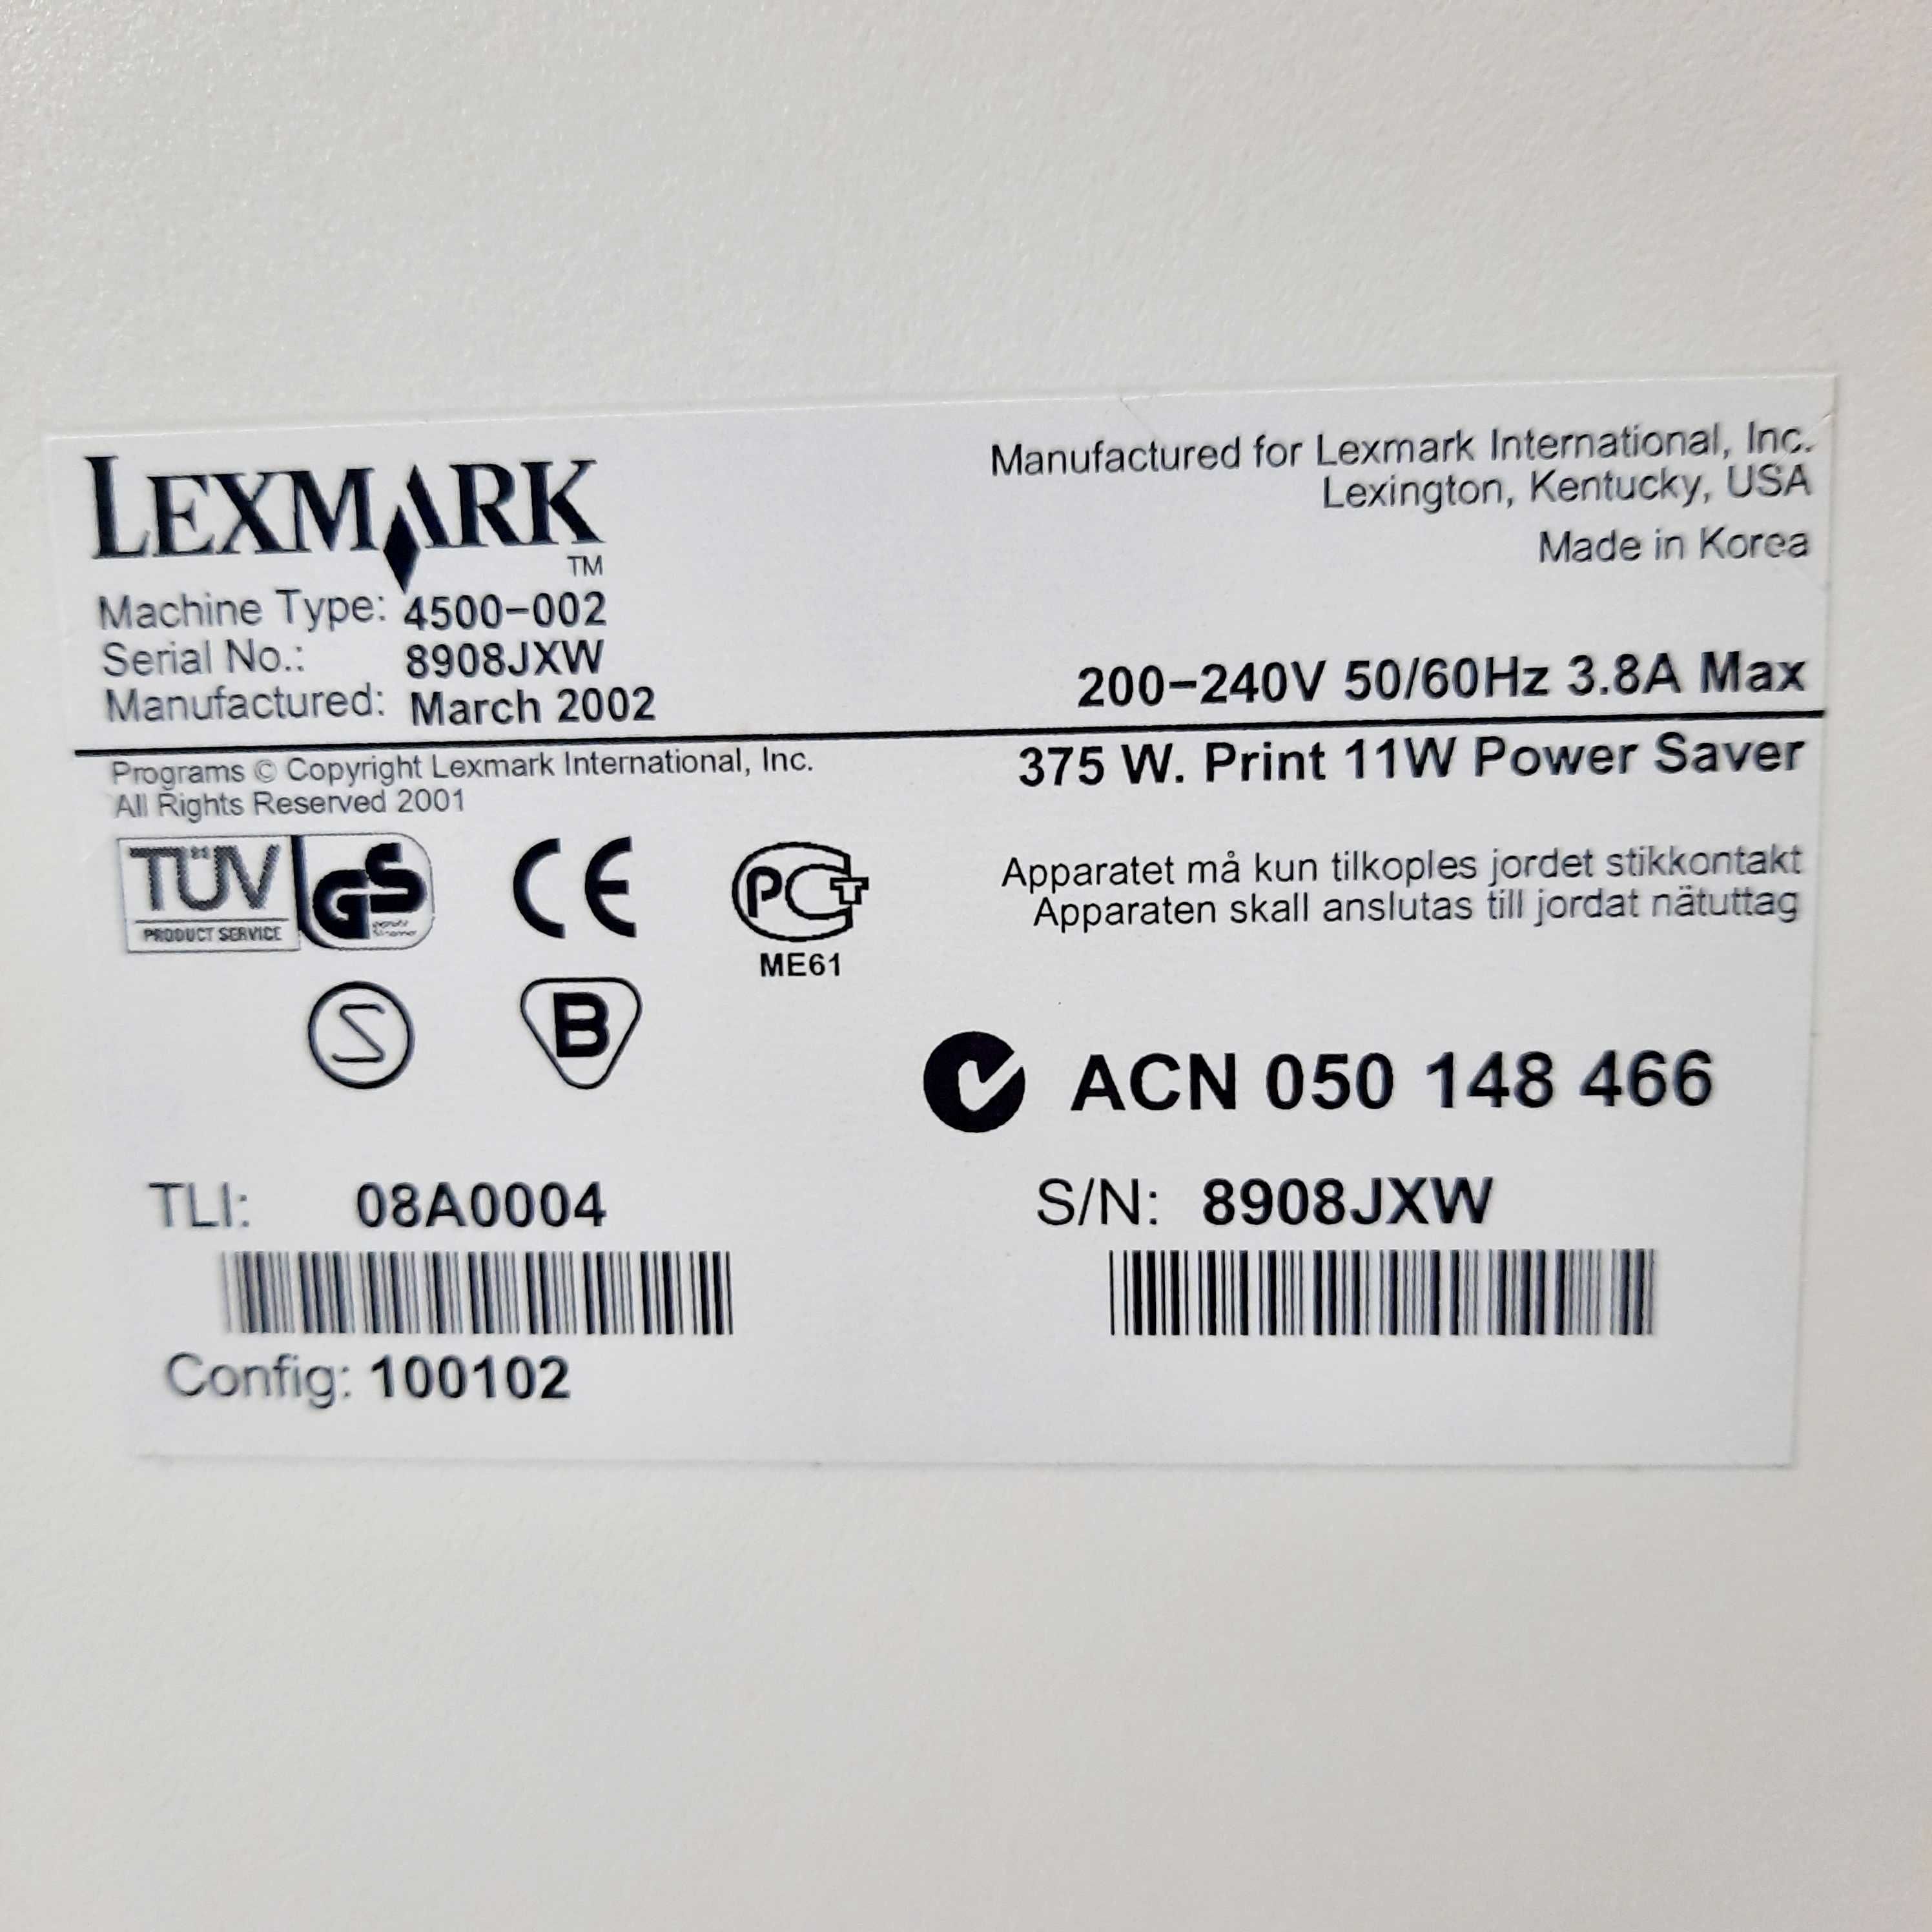 LEXMARK E322 08A0200 Impressora de mesa USB FAST